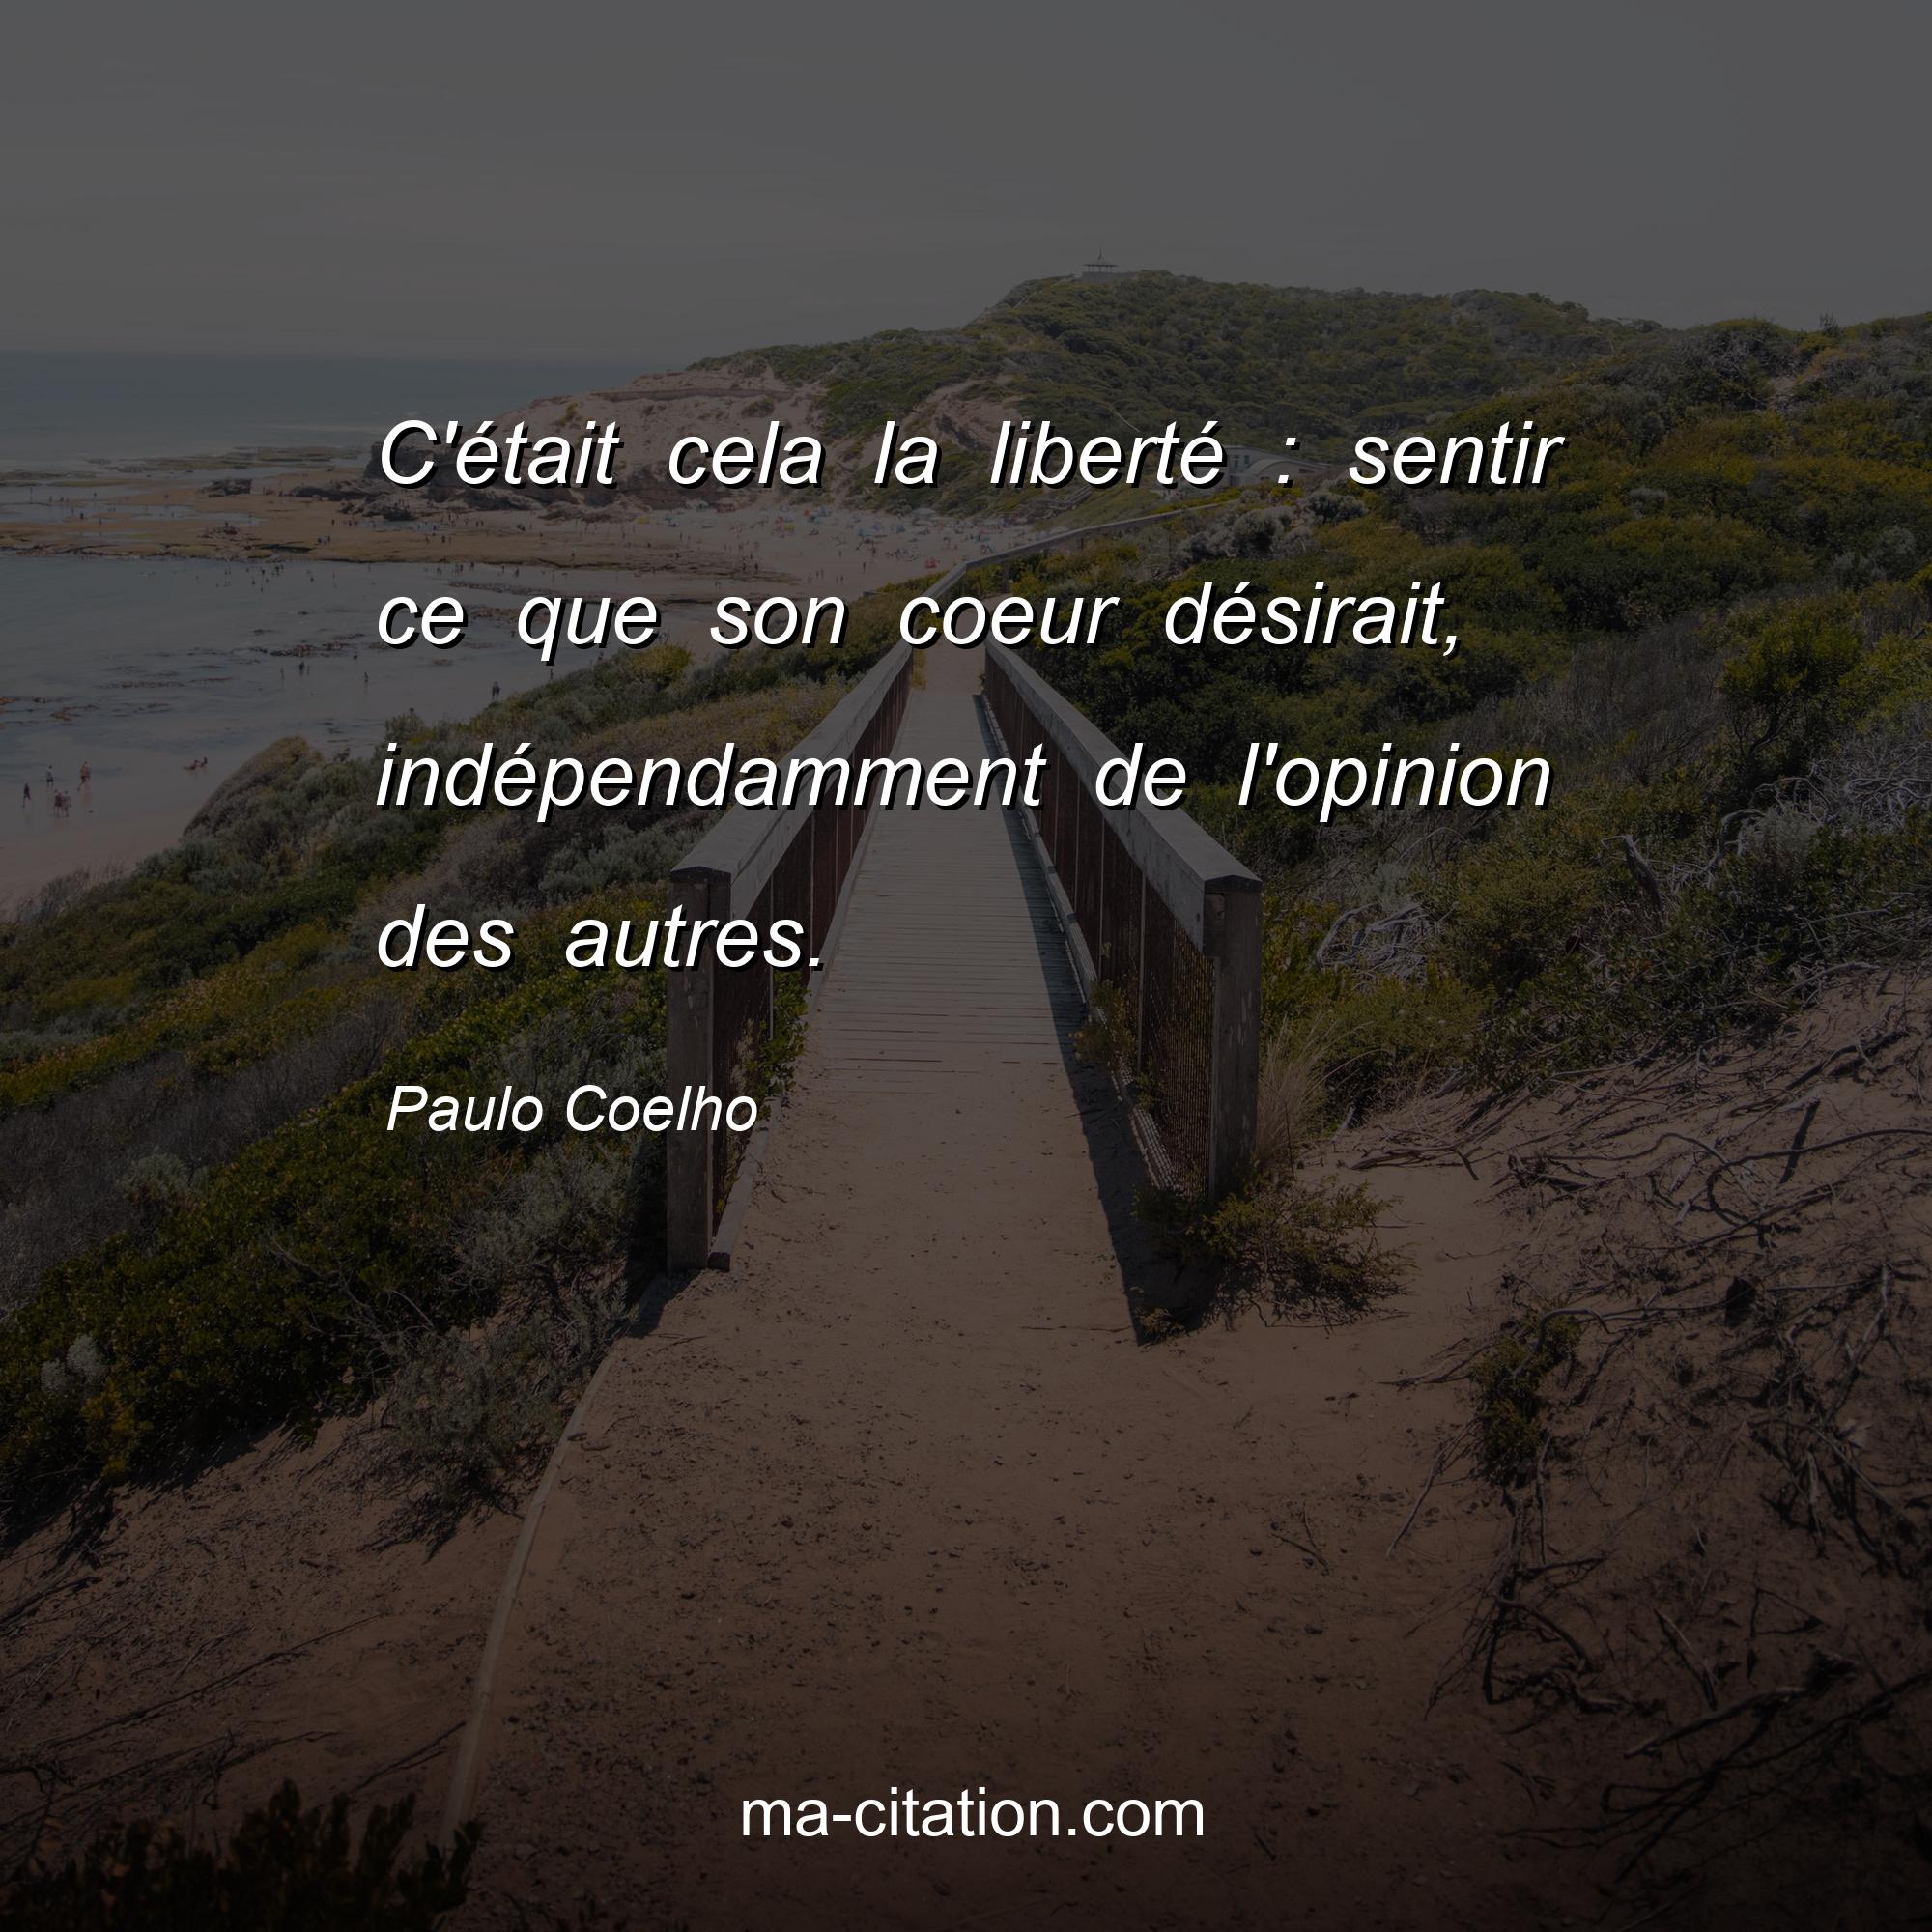 Paulo Coelho : C'était cela la liberté : sentir ce que son coeur désirait, indépendamment de l'opinion des autres.